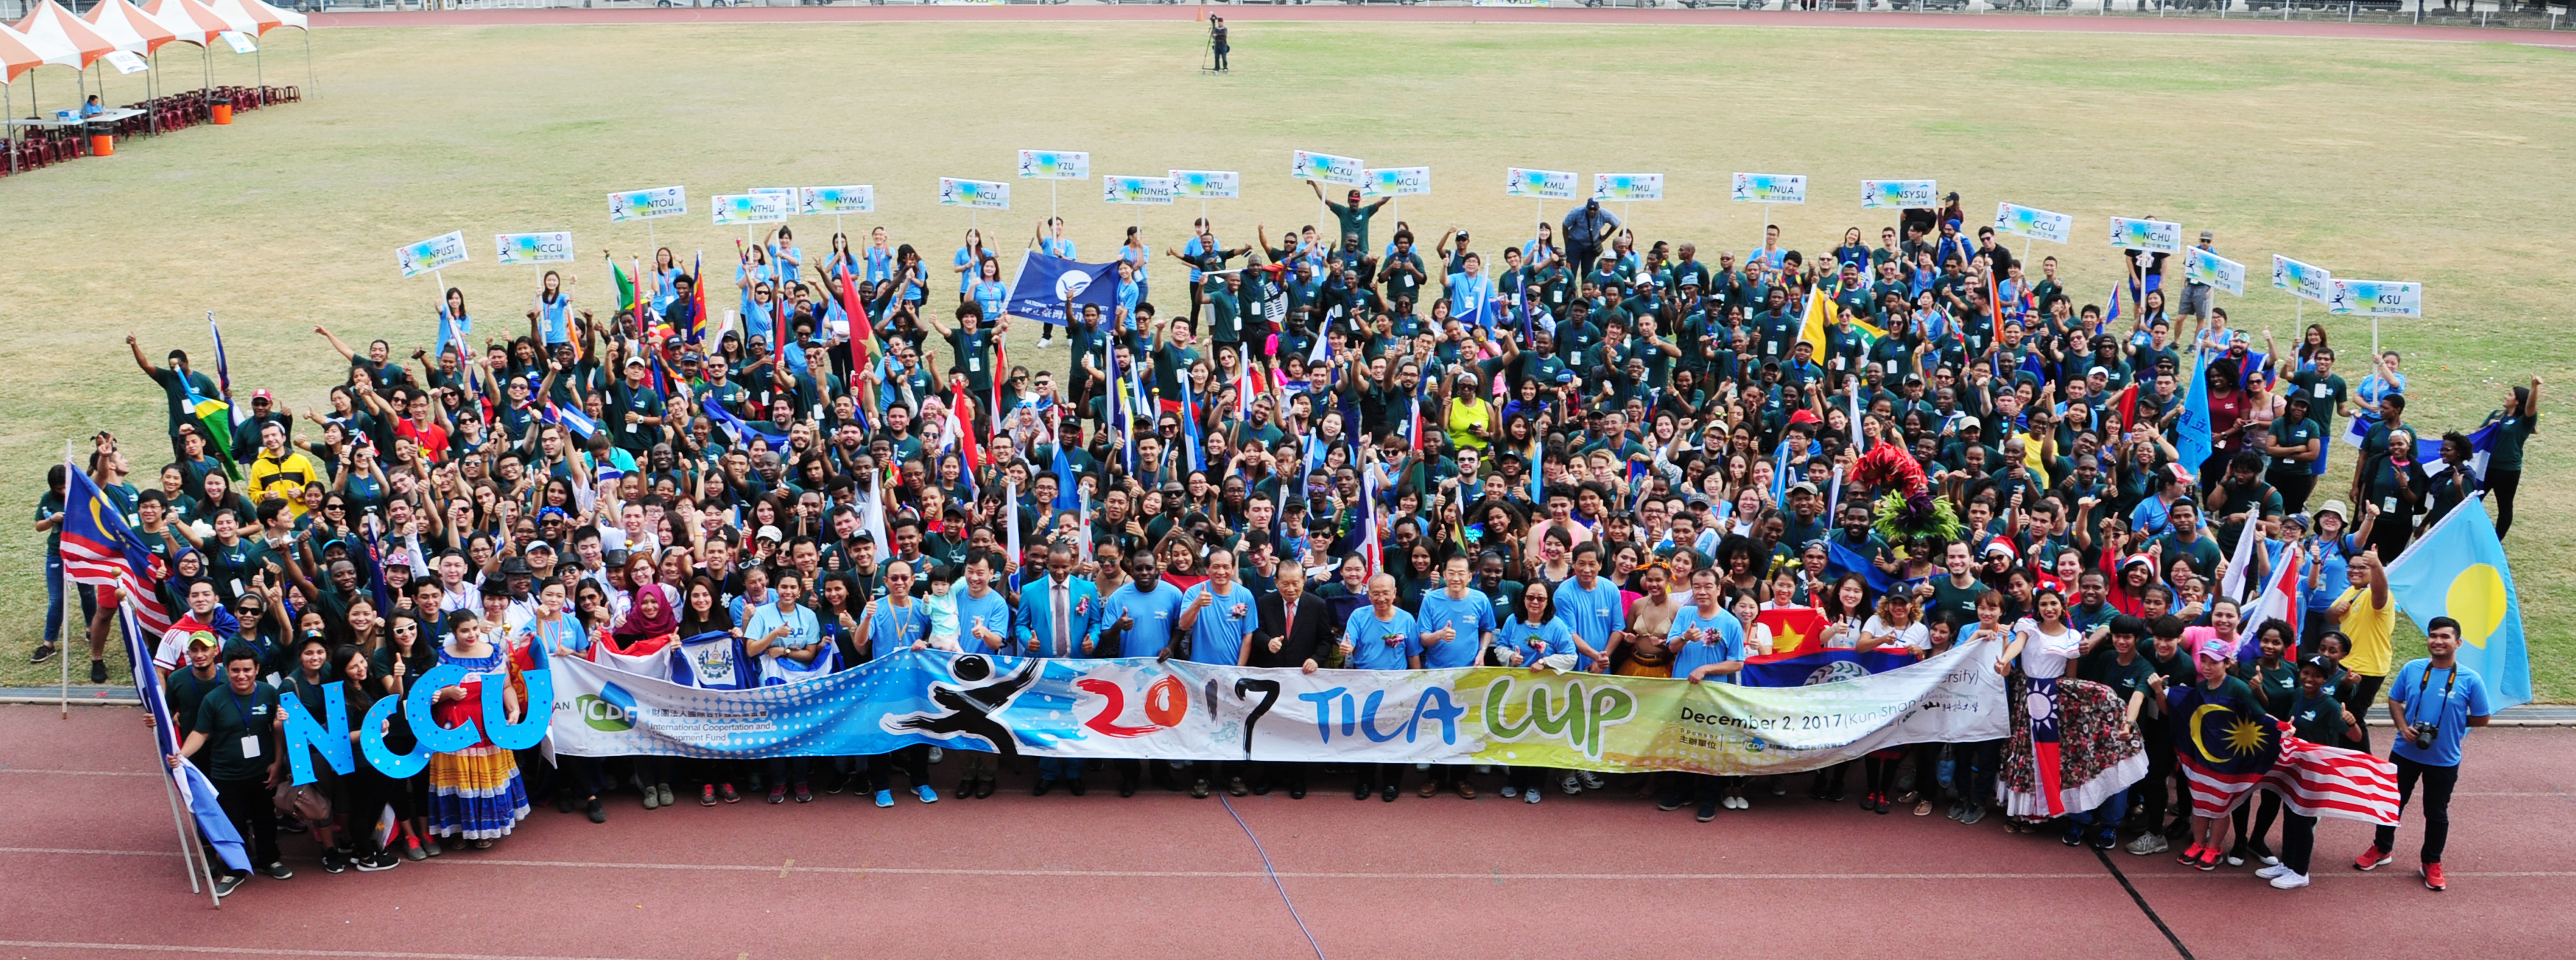 2017 TICA CUP held at KSU